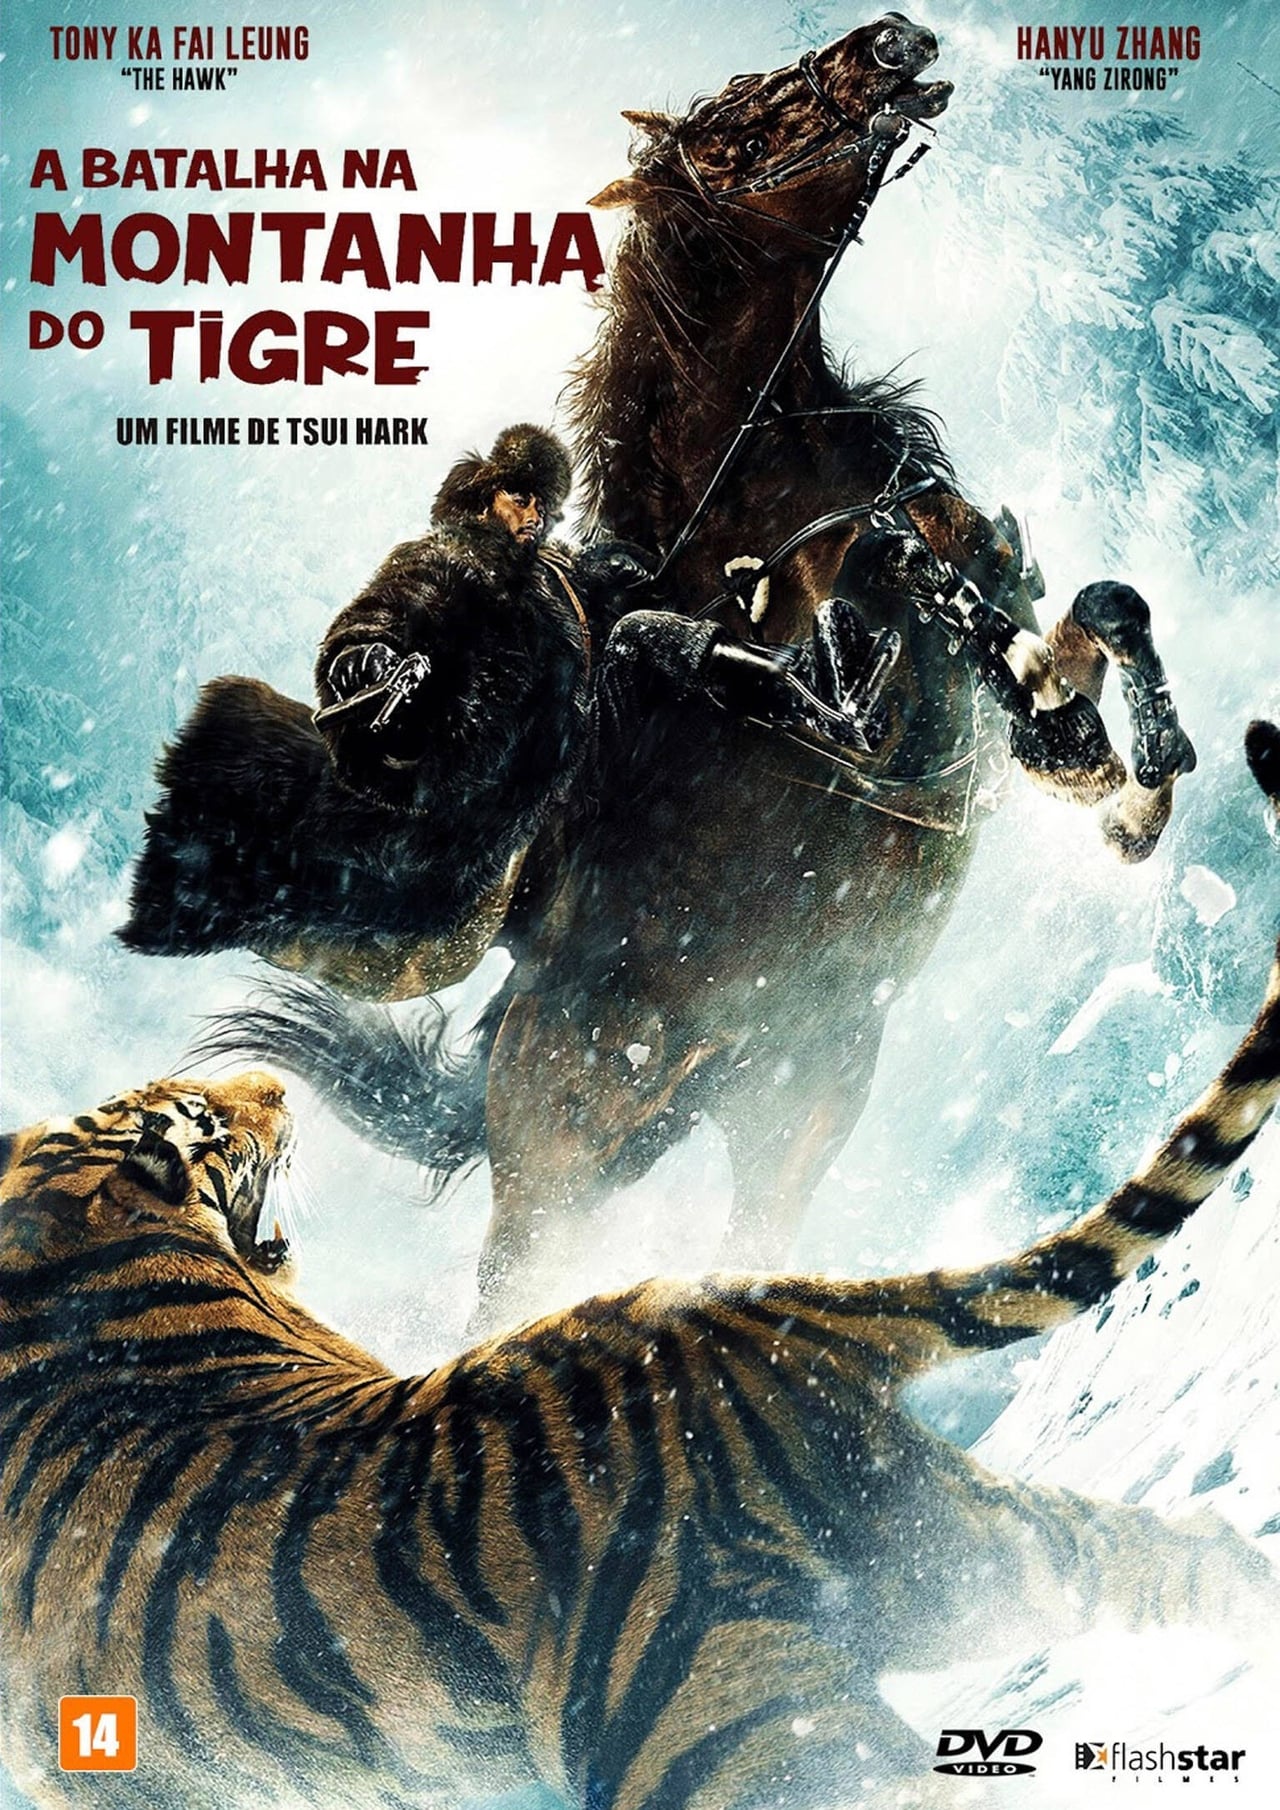 A Batalha na Montanha do Tigre